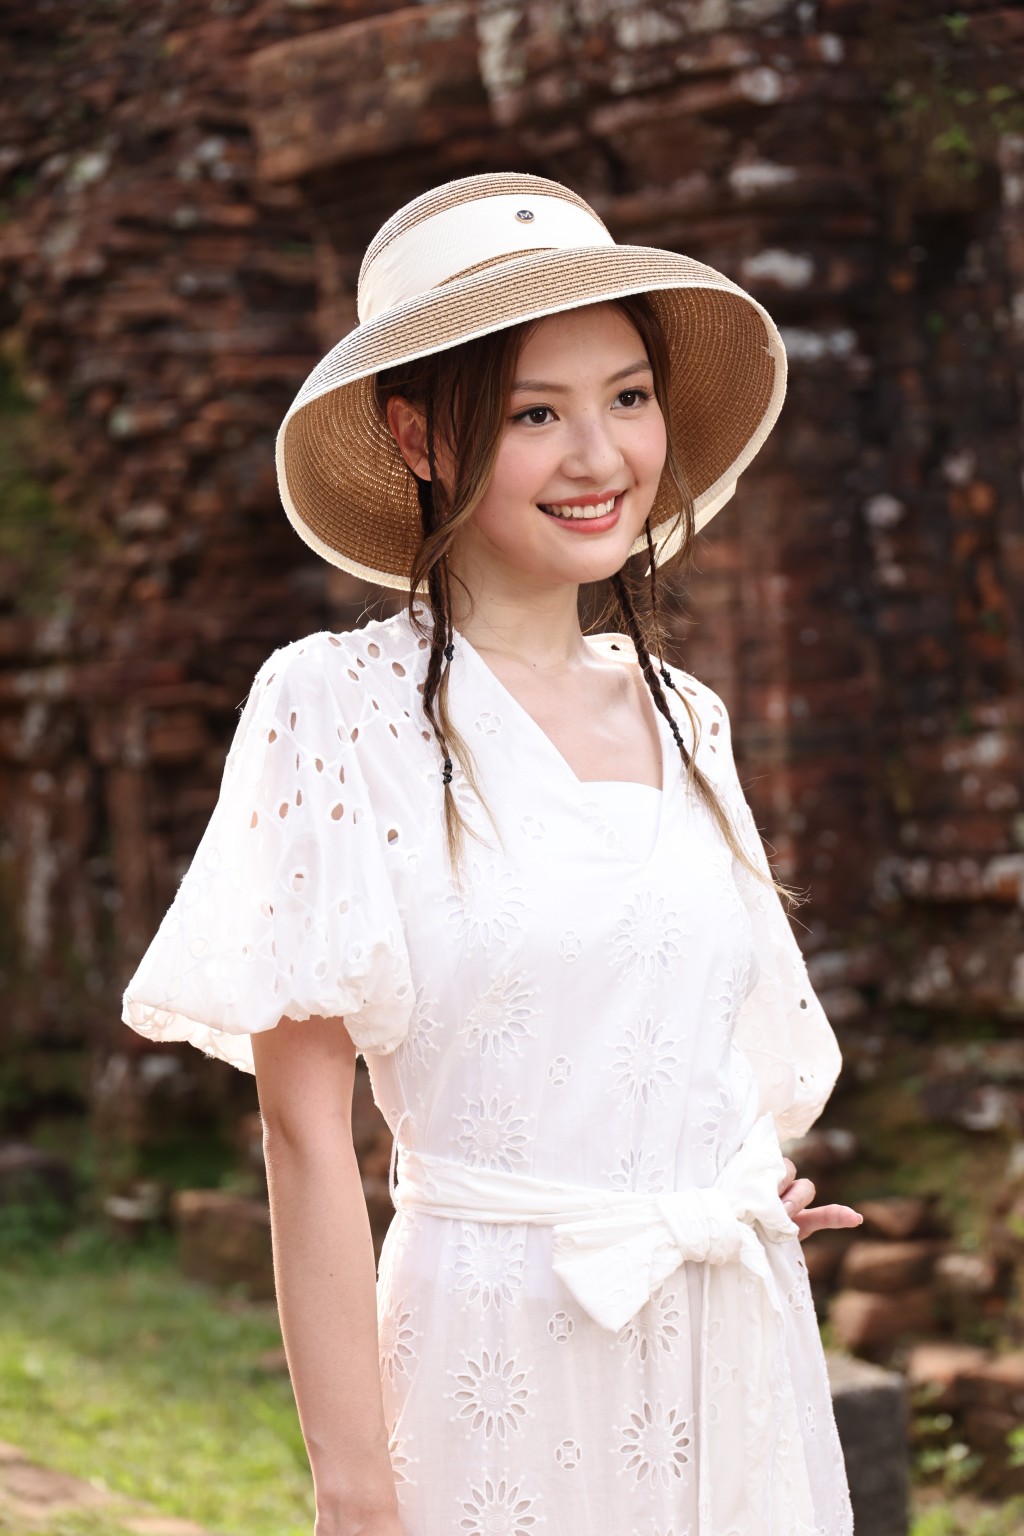 第二日外景拍攝，王怡然穿仙氣白裙，前往被列為世界文化遺產的美山聖地拍攝MV。